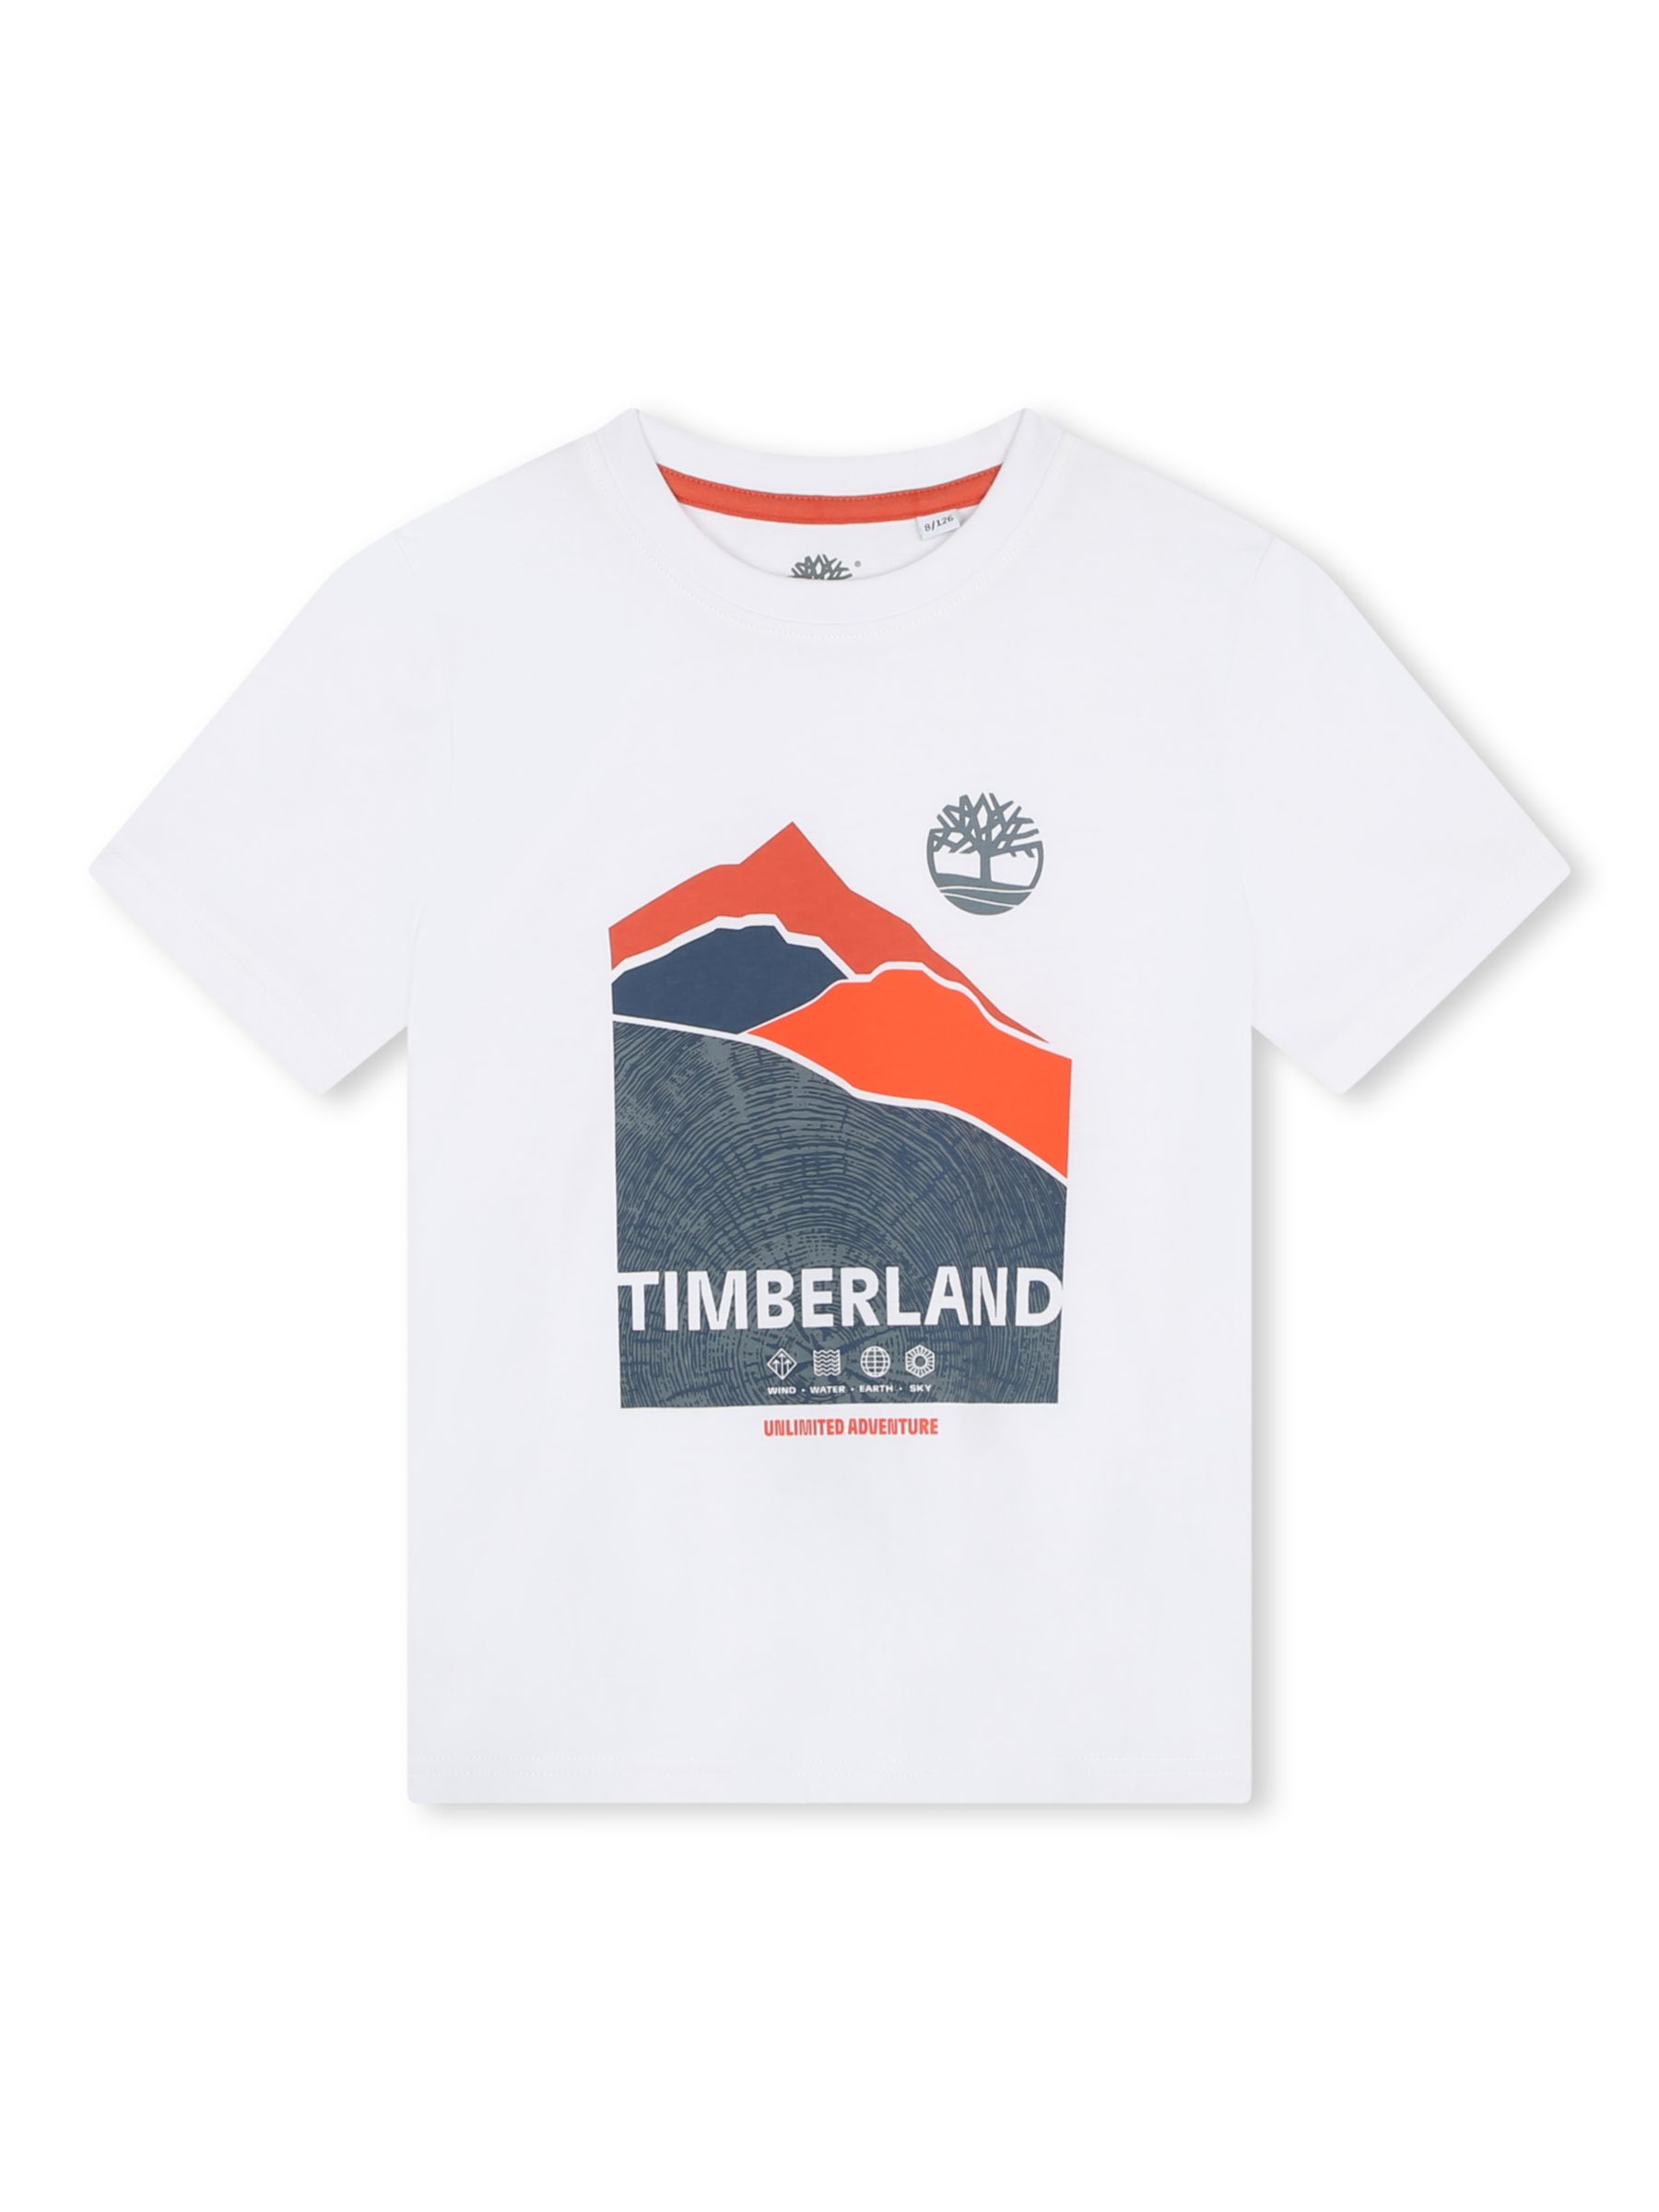 Timberland Kids' Logo Mountain Graphic Print T-Shirt, White, 4 years